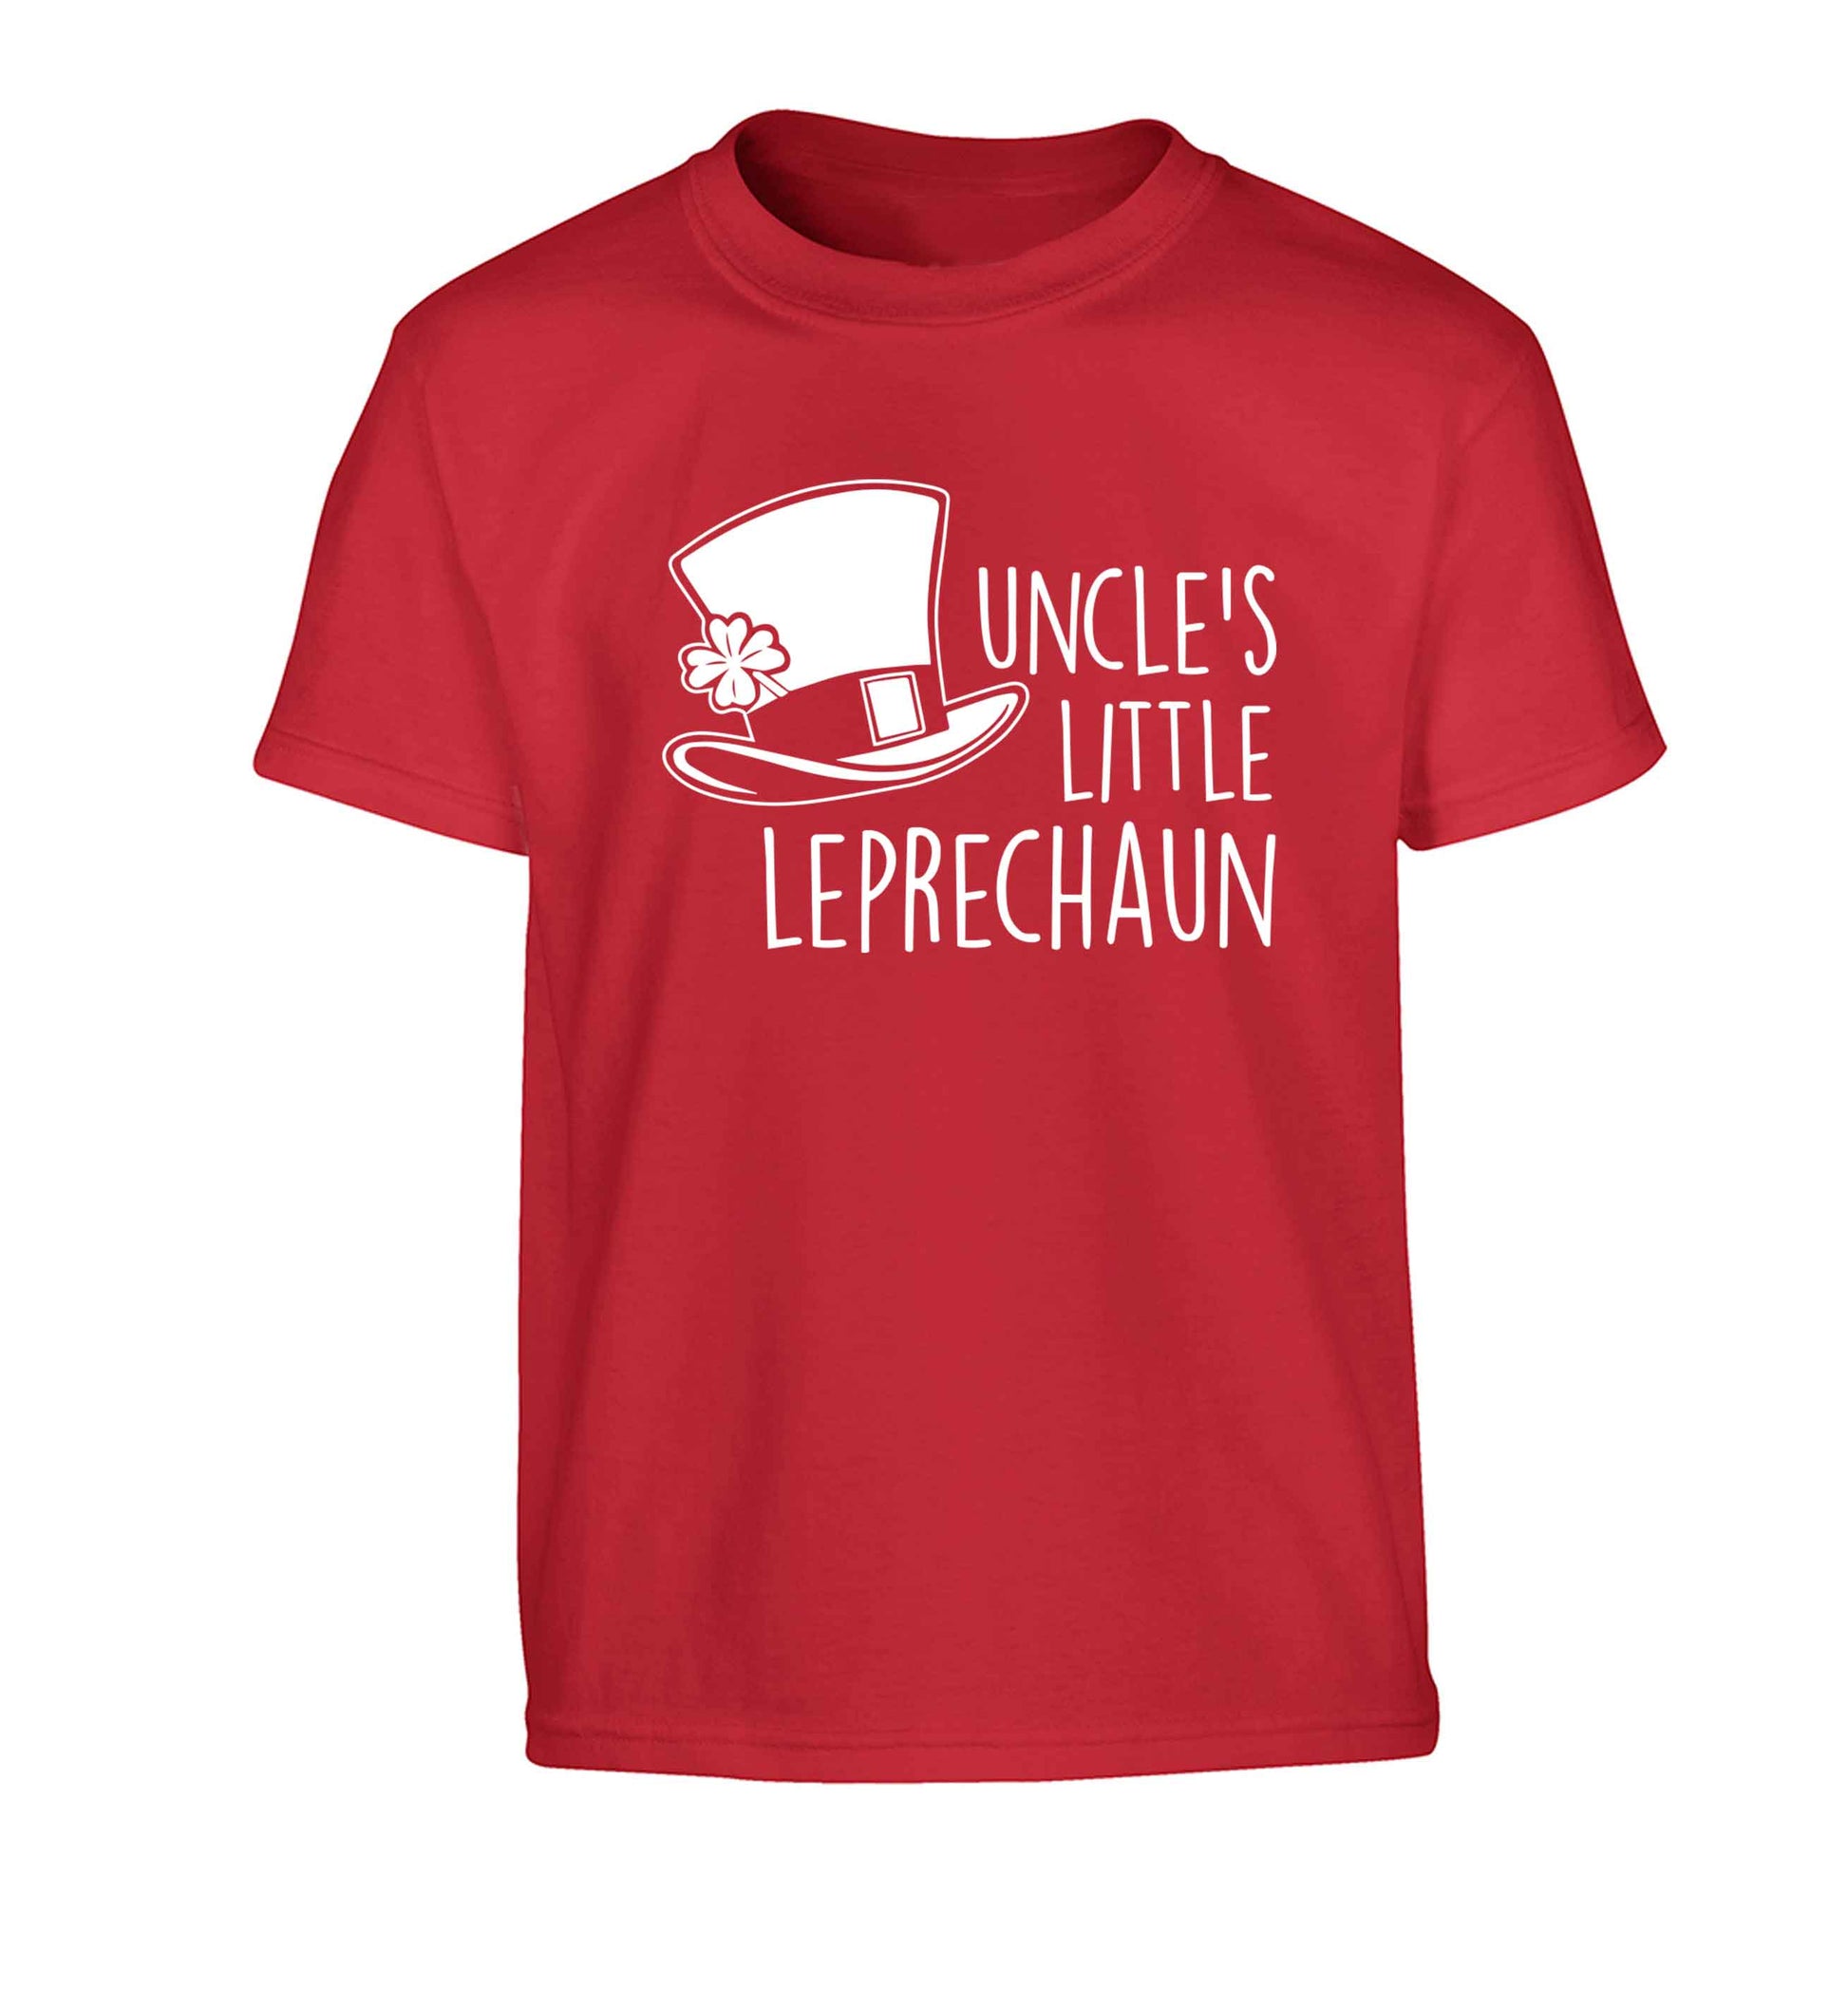 Uncles little leprechaun Children's red Tshirt 12-13 Years